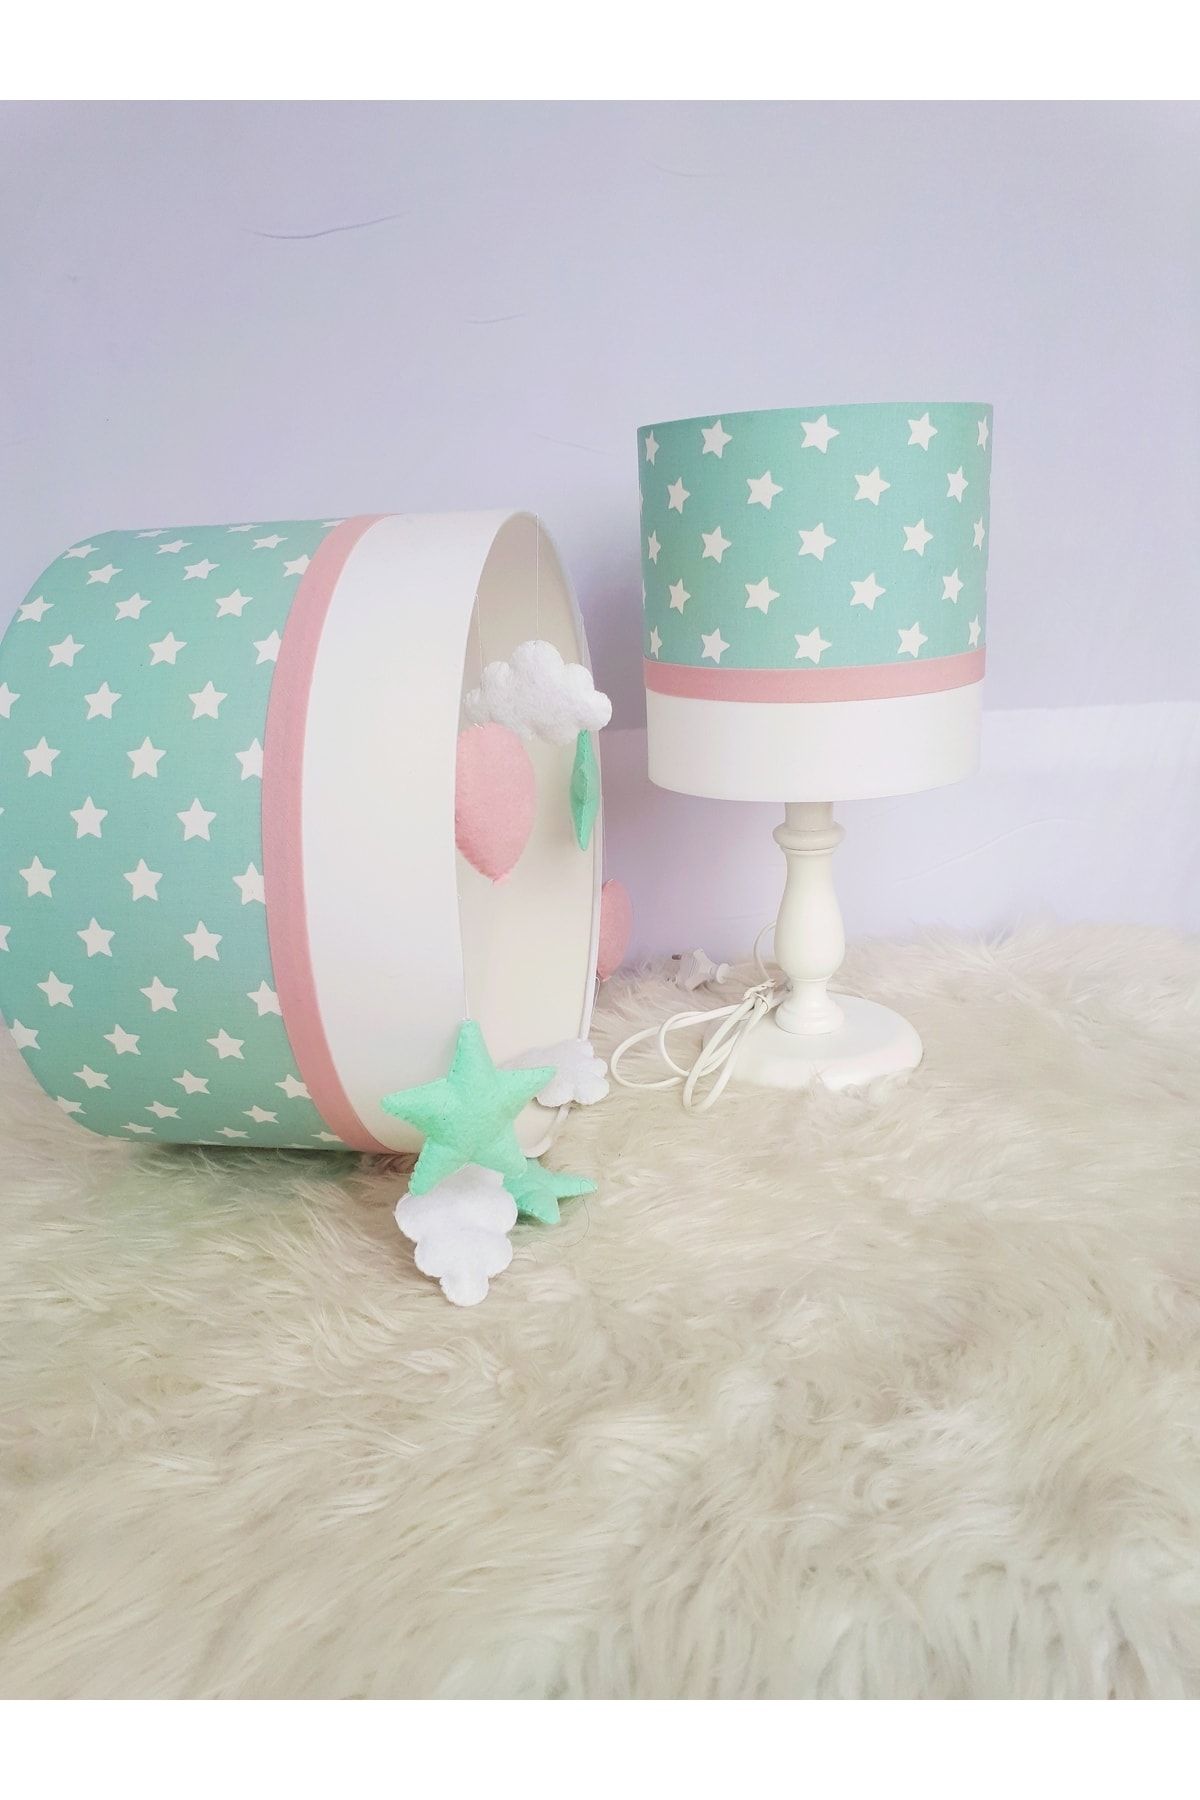 Leobabyroom Mint Yeşili Minik Yıldızlı Pembe Şeritli Beyaz Bebek/çocuk Odası Tasarım Avize Abajur Seti